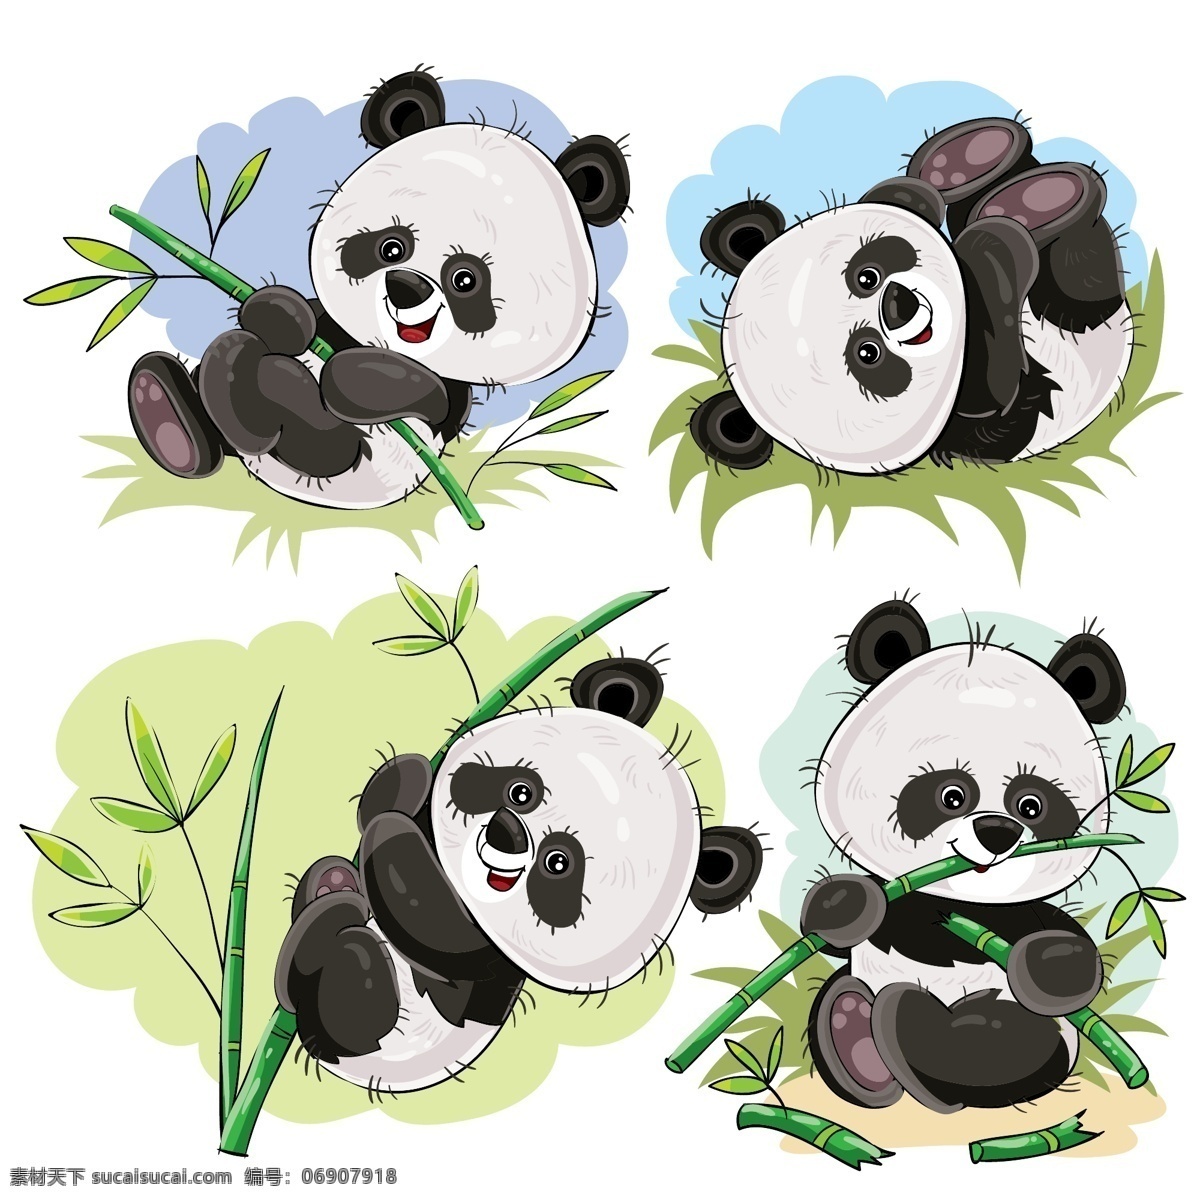 手绘 可爱 熊猫 竹子 可爱熊猫 卡通 矢量 矢量卡通 生物世界 野生动物